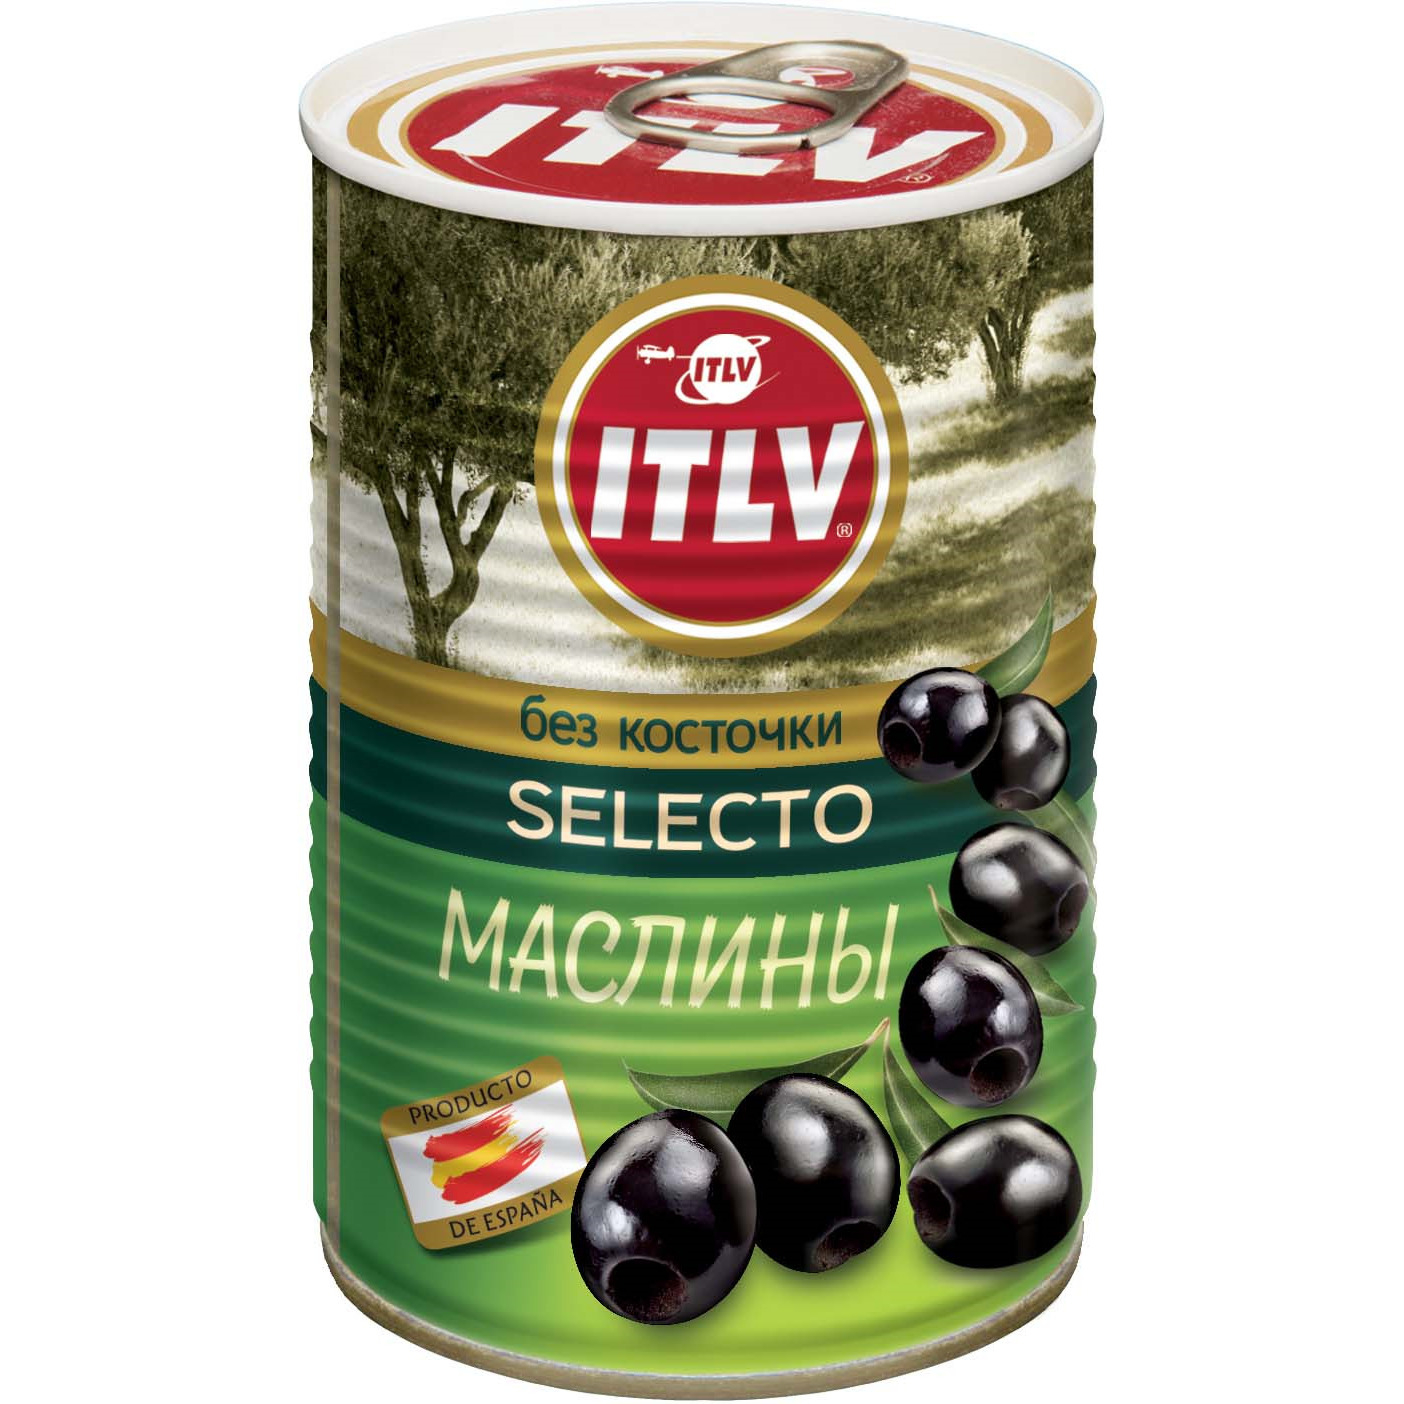 Маслины без косточки ITLV  Selecto, 425 мл маслины без косточки itlv clasico 314 мл